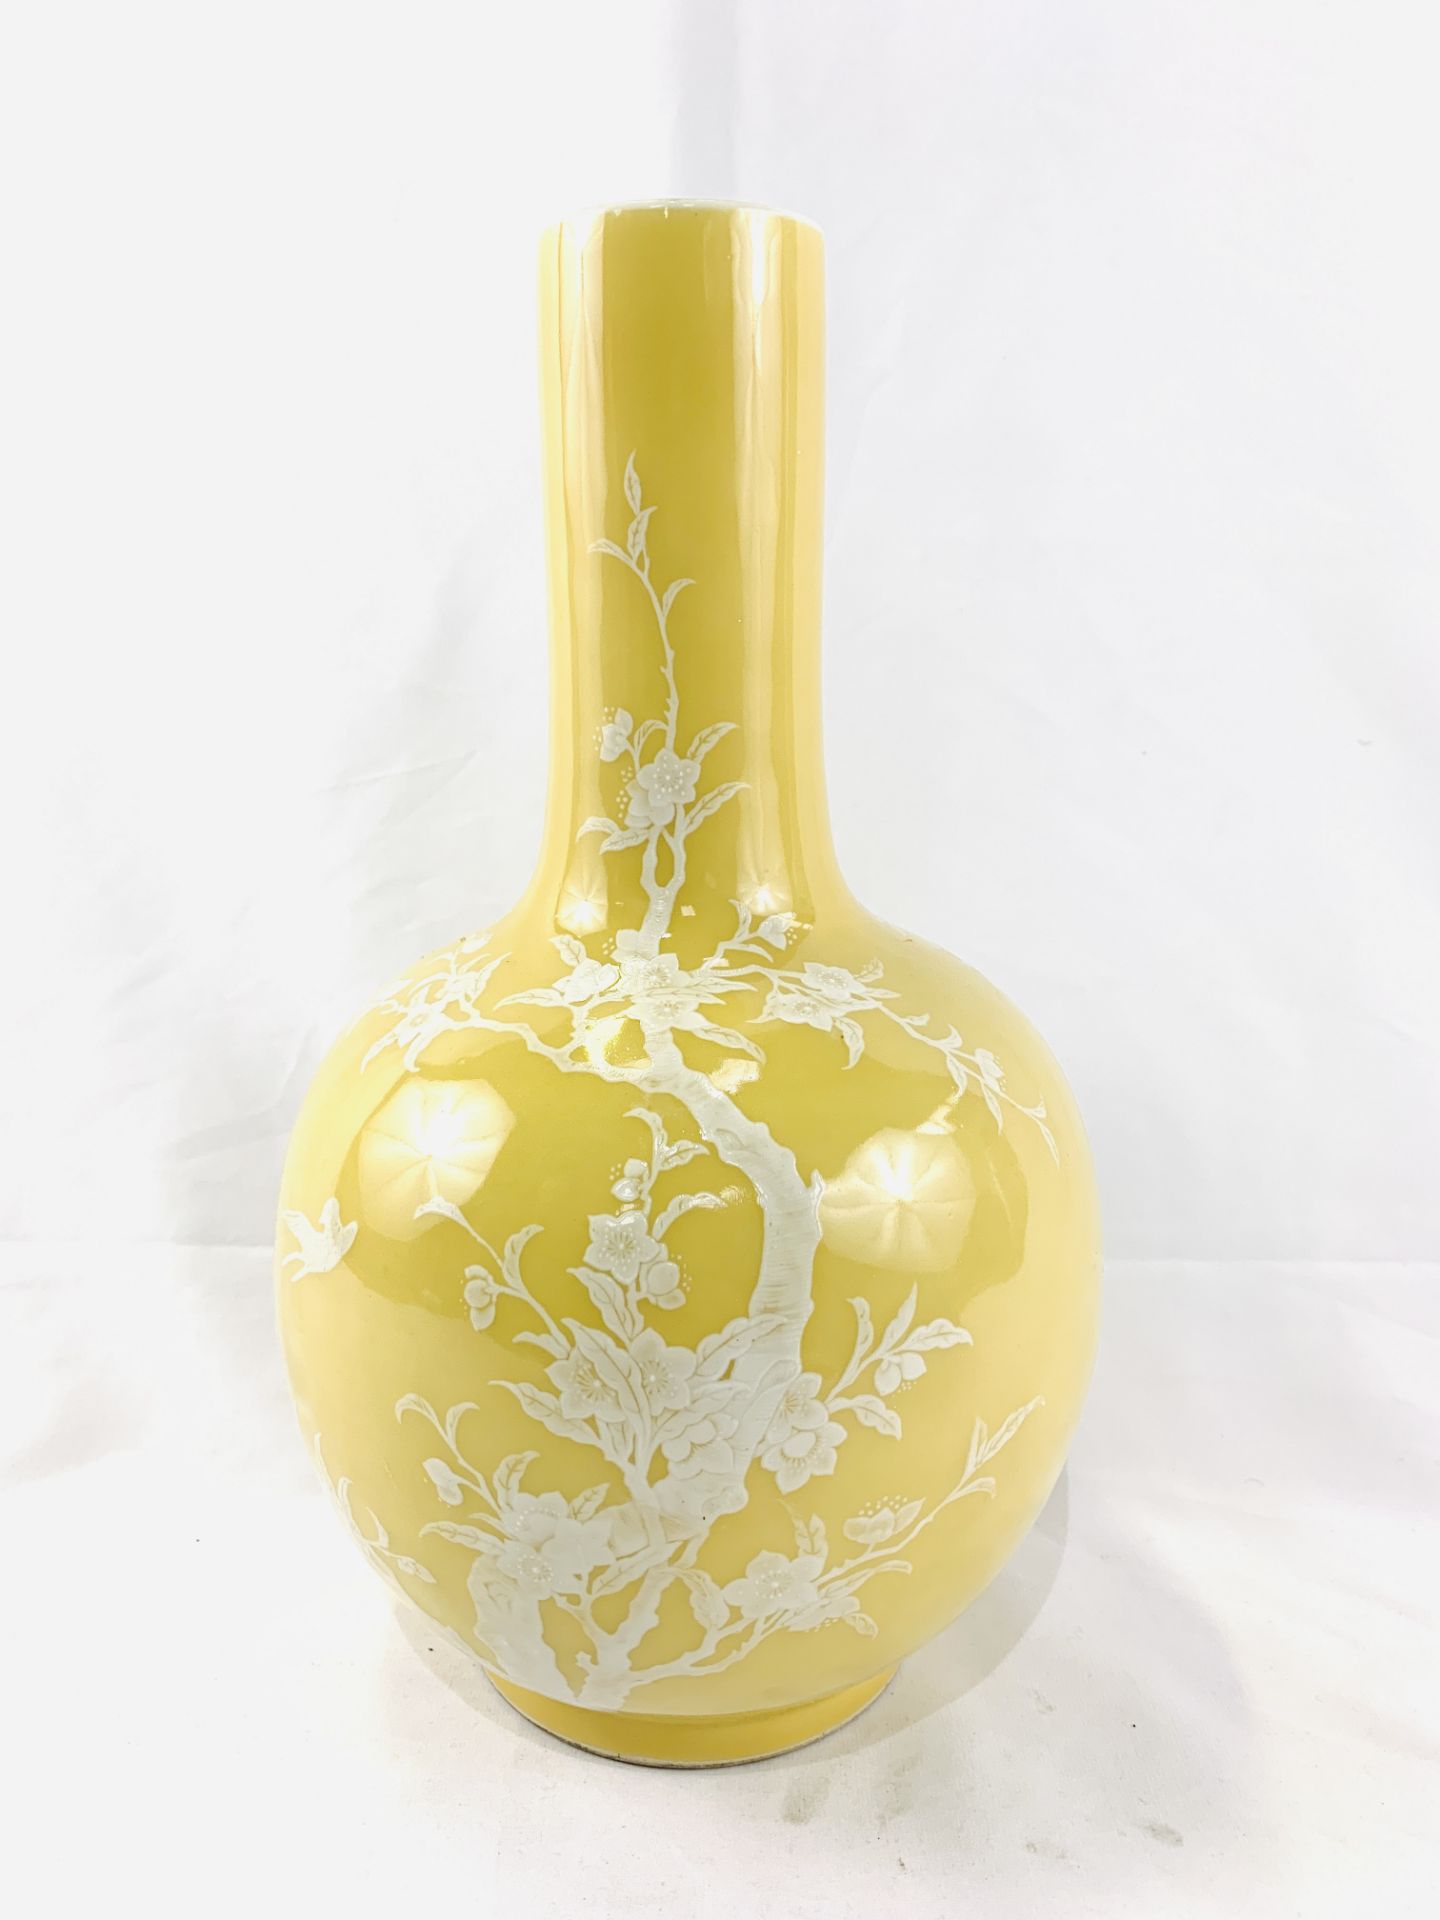 Yellow globe shaped vase - Image 2 of 6